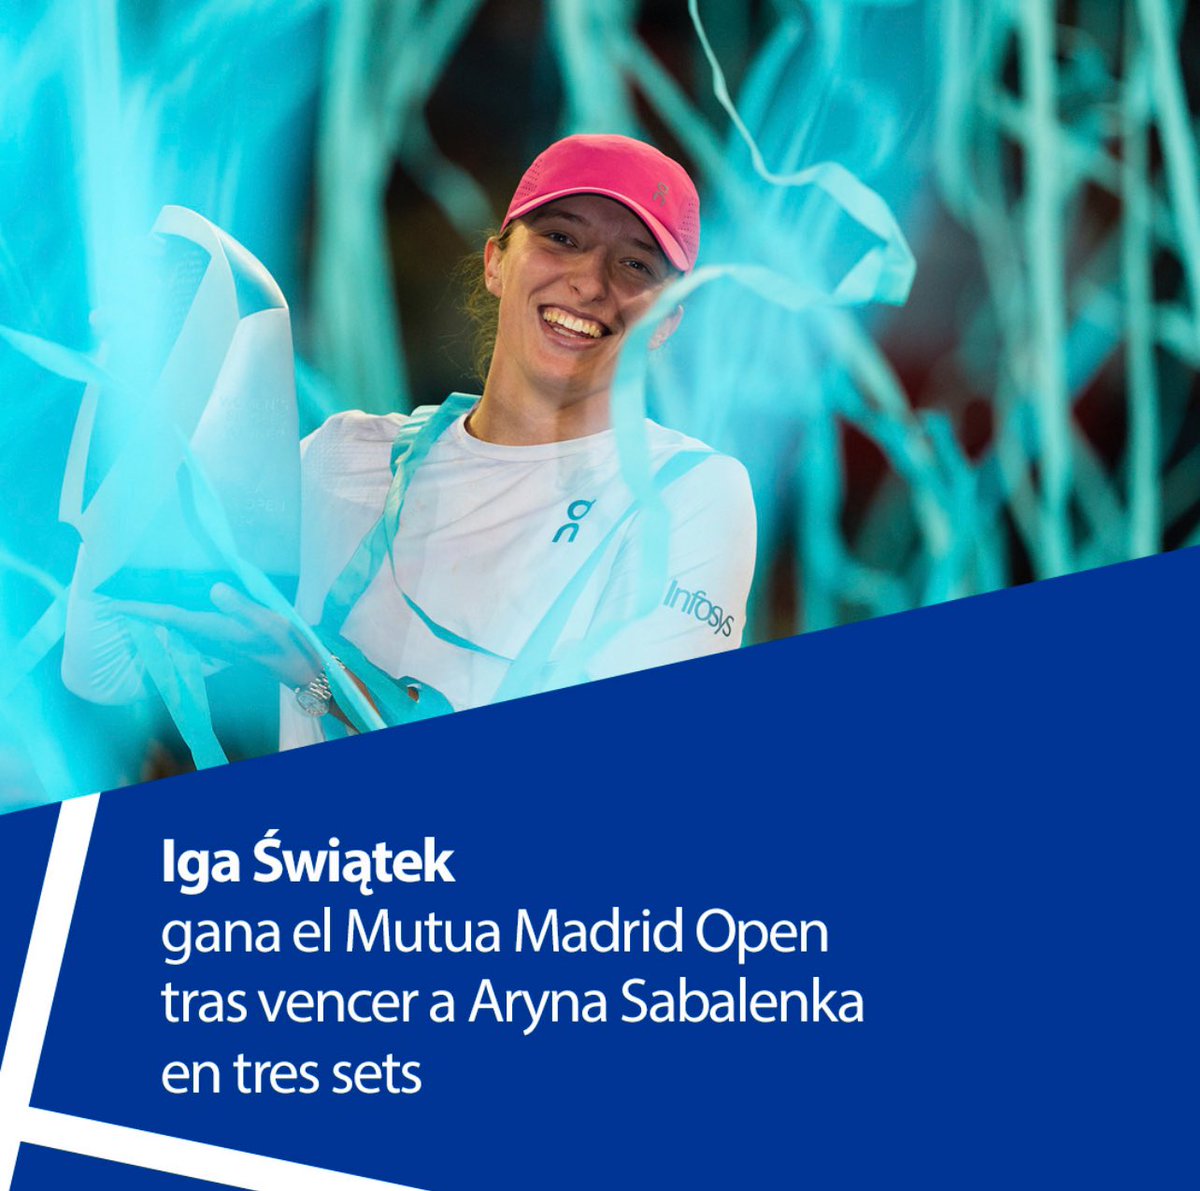 ¡Enhorabuena @iga_swiatek por tu título en Madrid! La tenista polaca es la nueva ganadora del @MutuaMadridOpen, tras vencer a @SabalenkaA en una final histórica